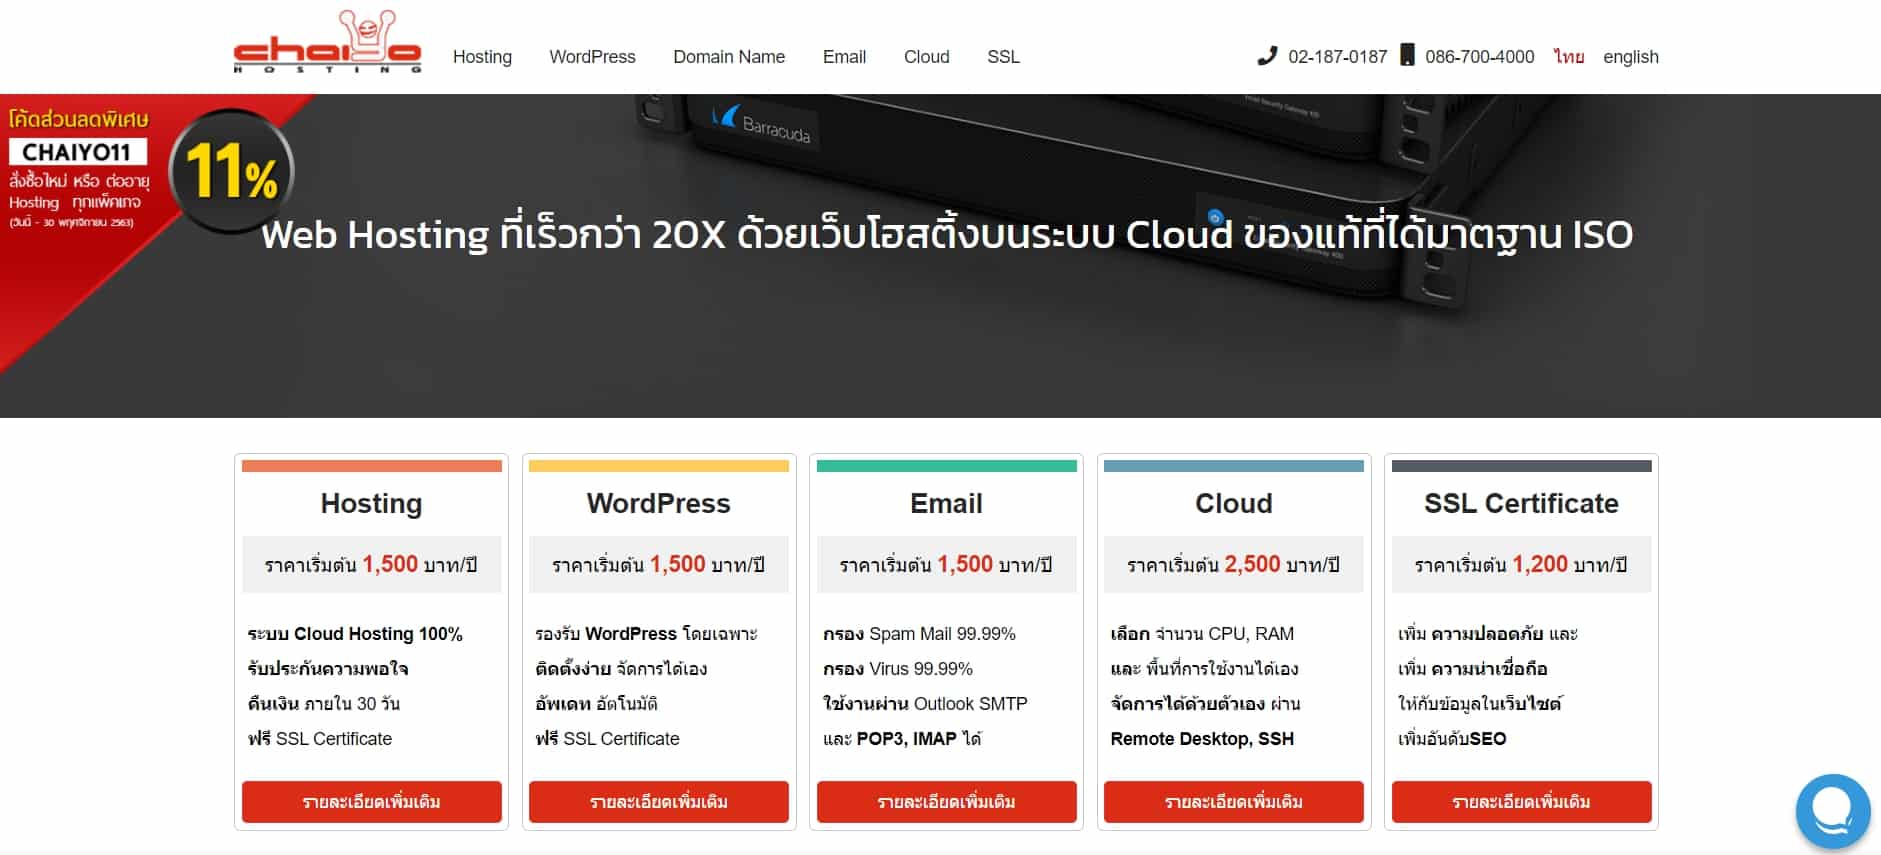 Thai Web Hosting